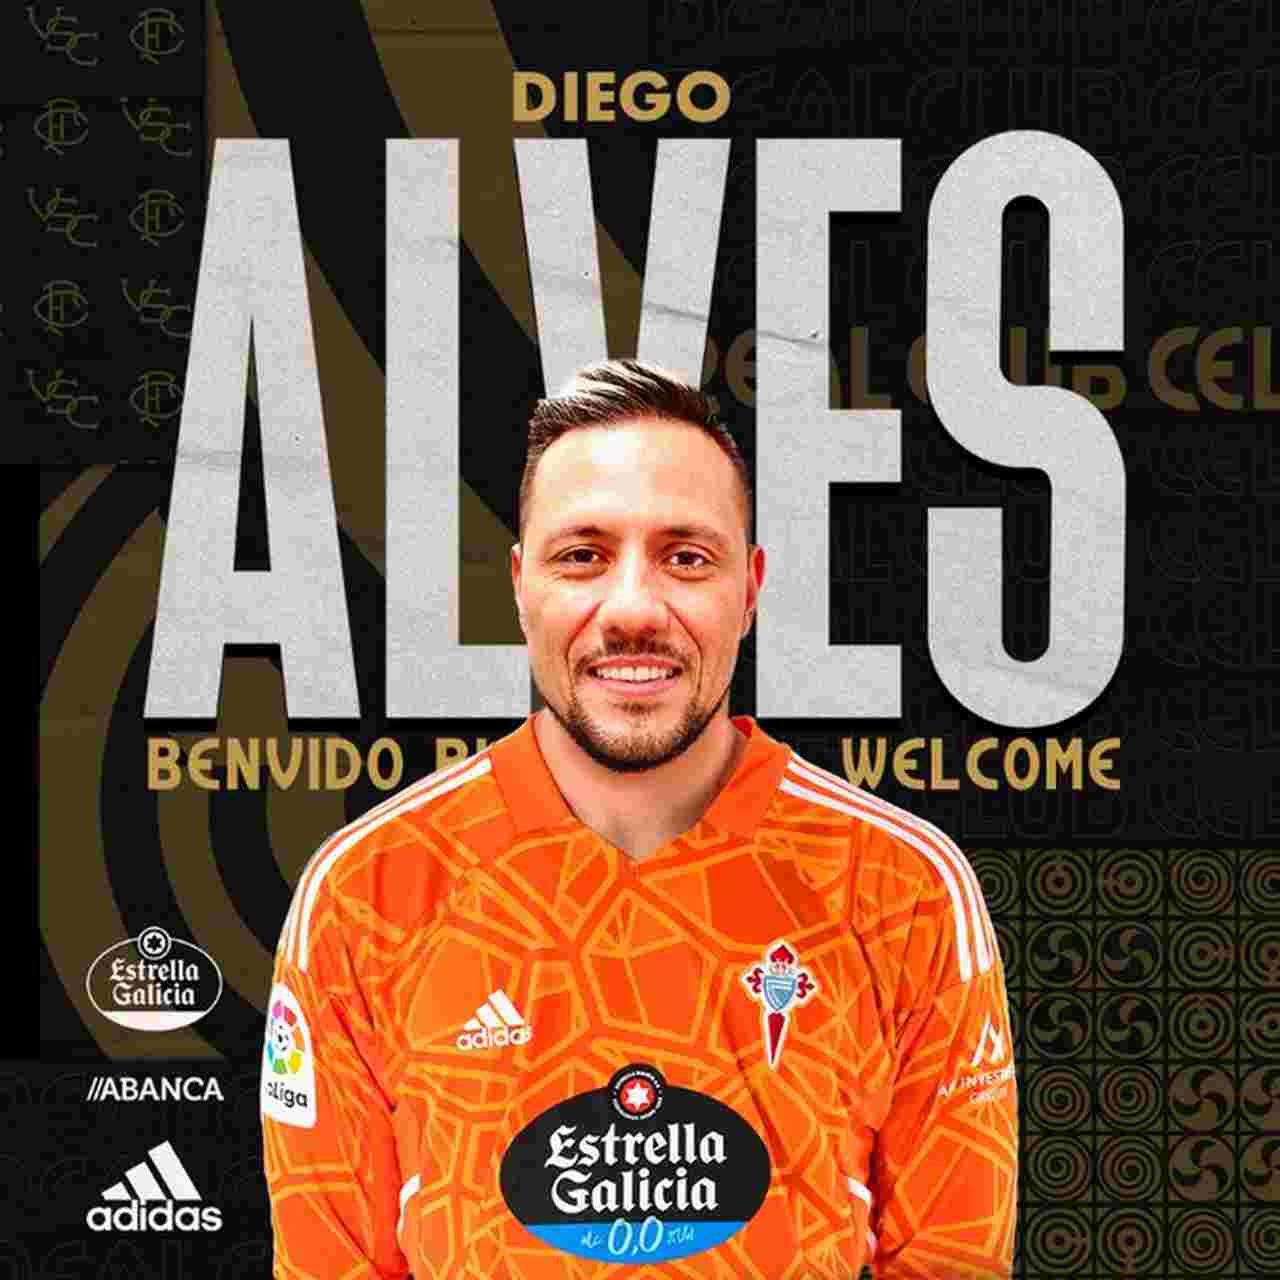 Espanhol: Celta de Vigo oficializa a contratação do goleiro Diego Alves, ex-Flamengo